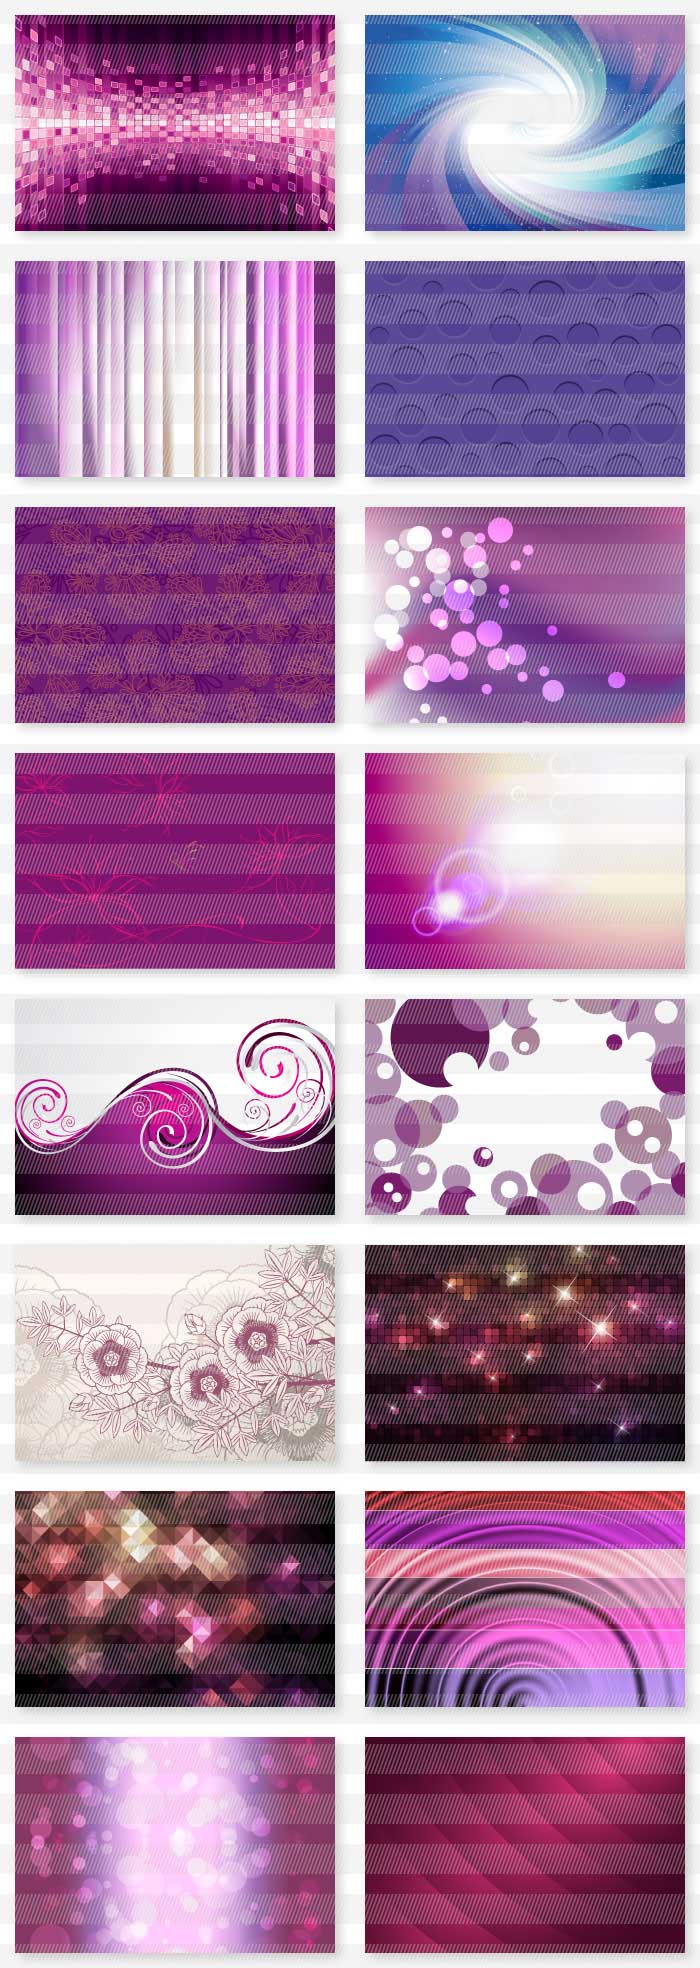 ピンクと紫のイラスト背景素材_5